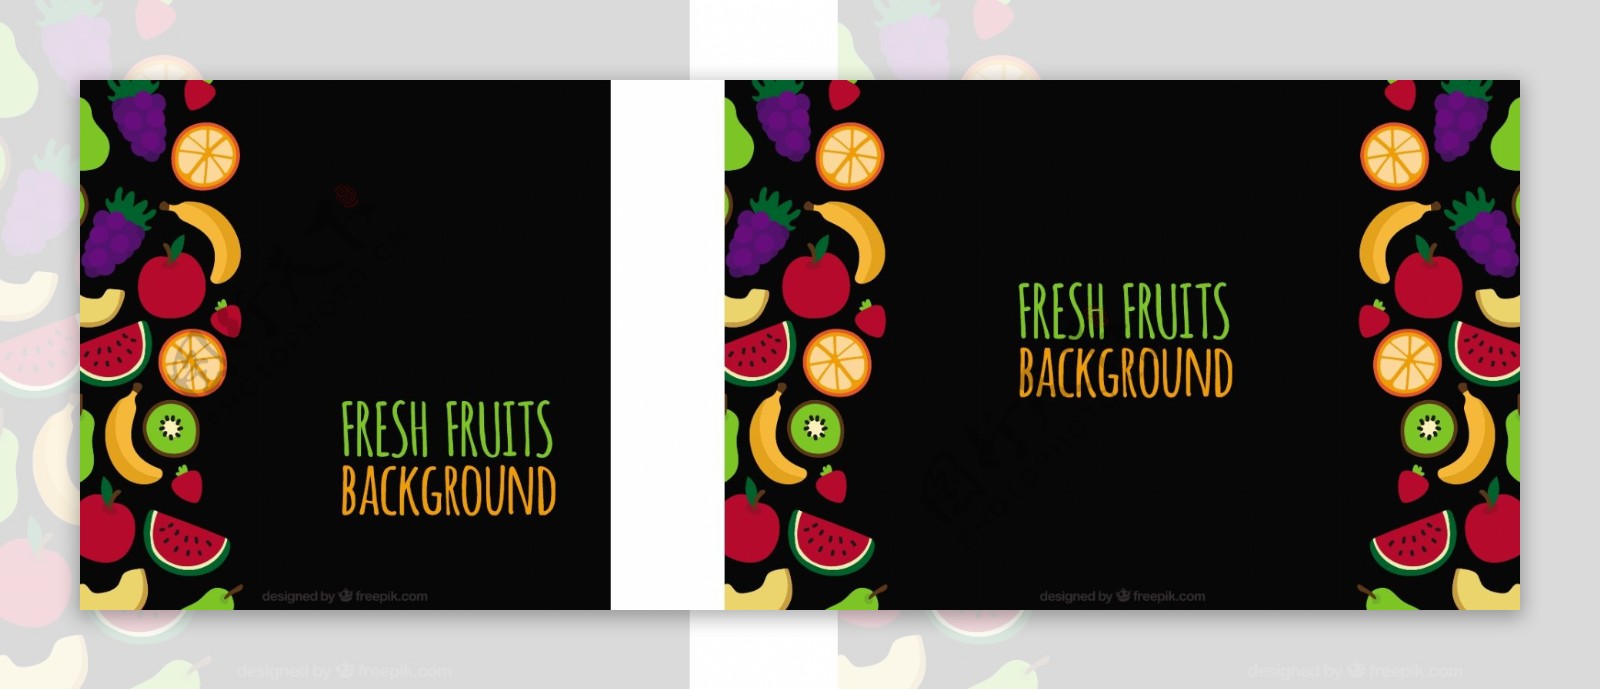 黑色背景与彩色水果在平面设计